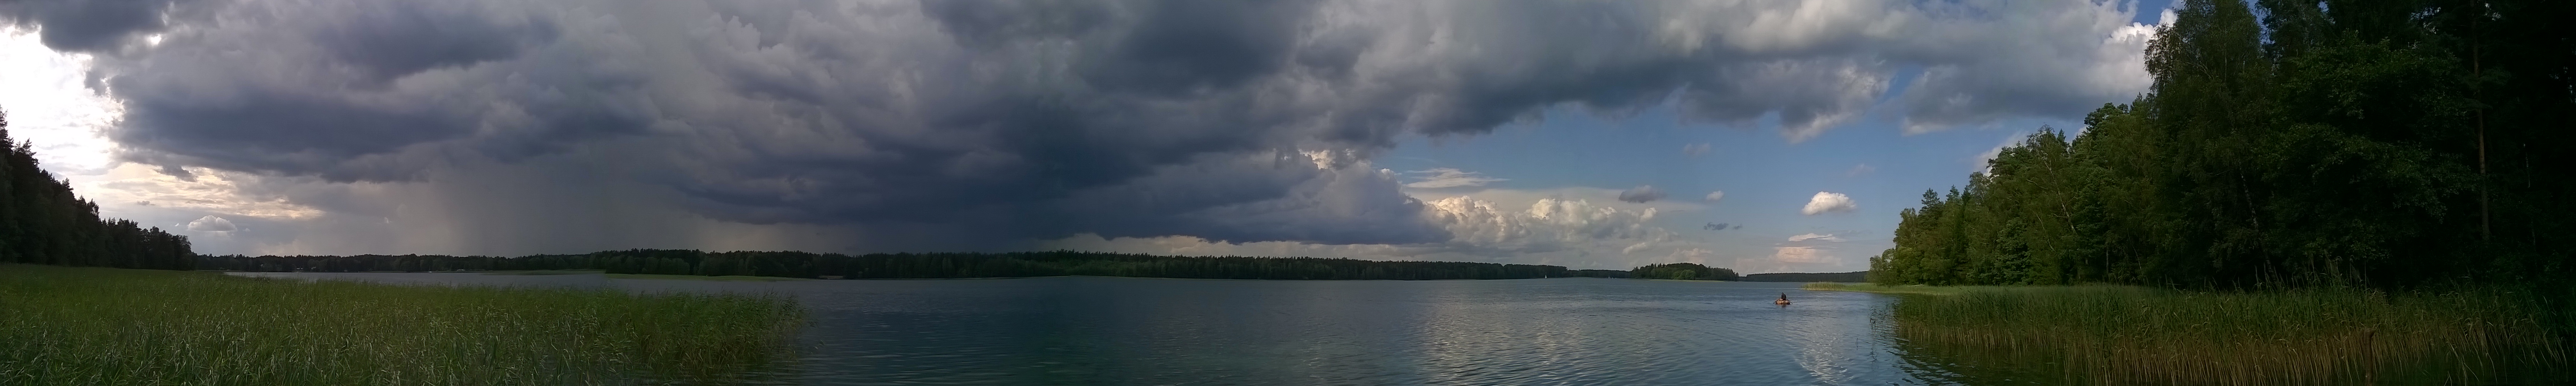 Jezioro Serwy - panorama, kliknij by powiększyć